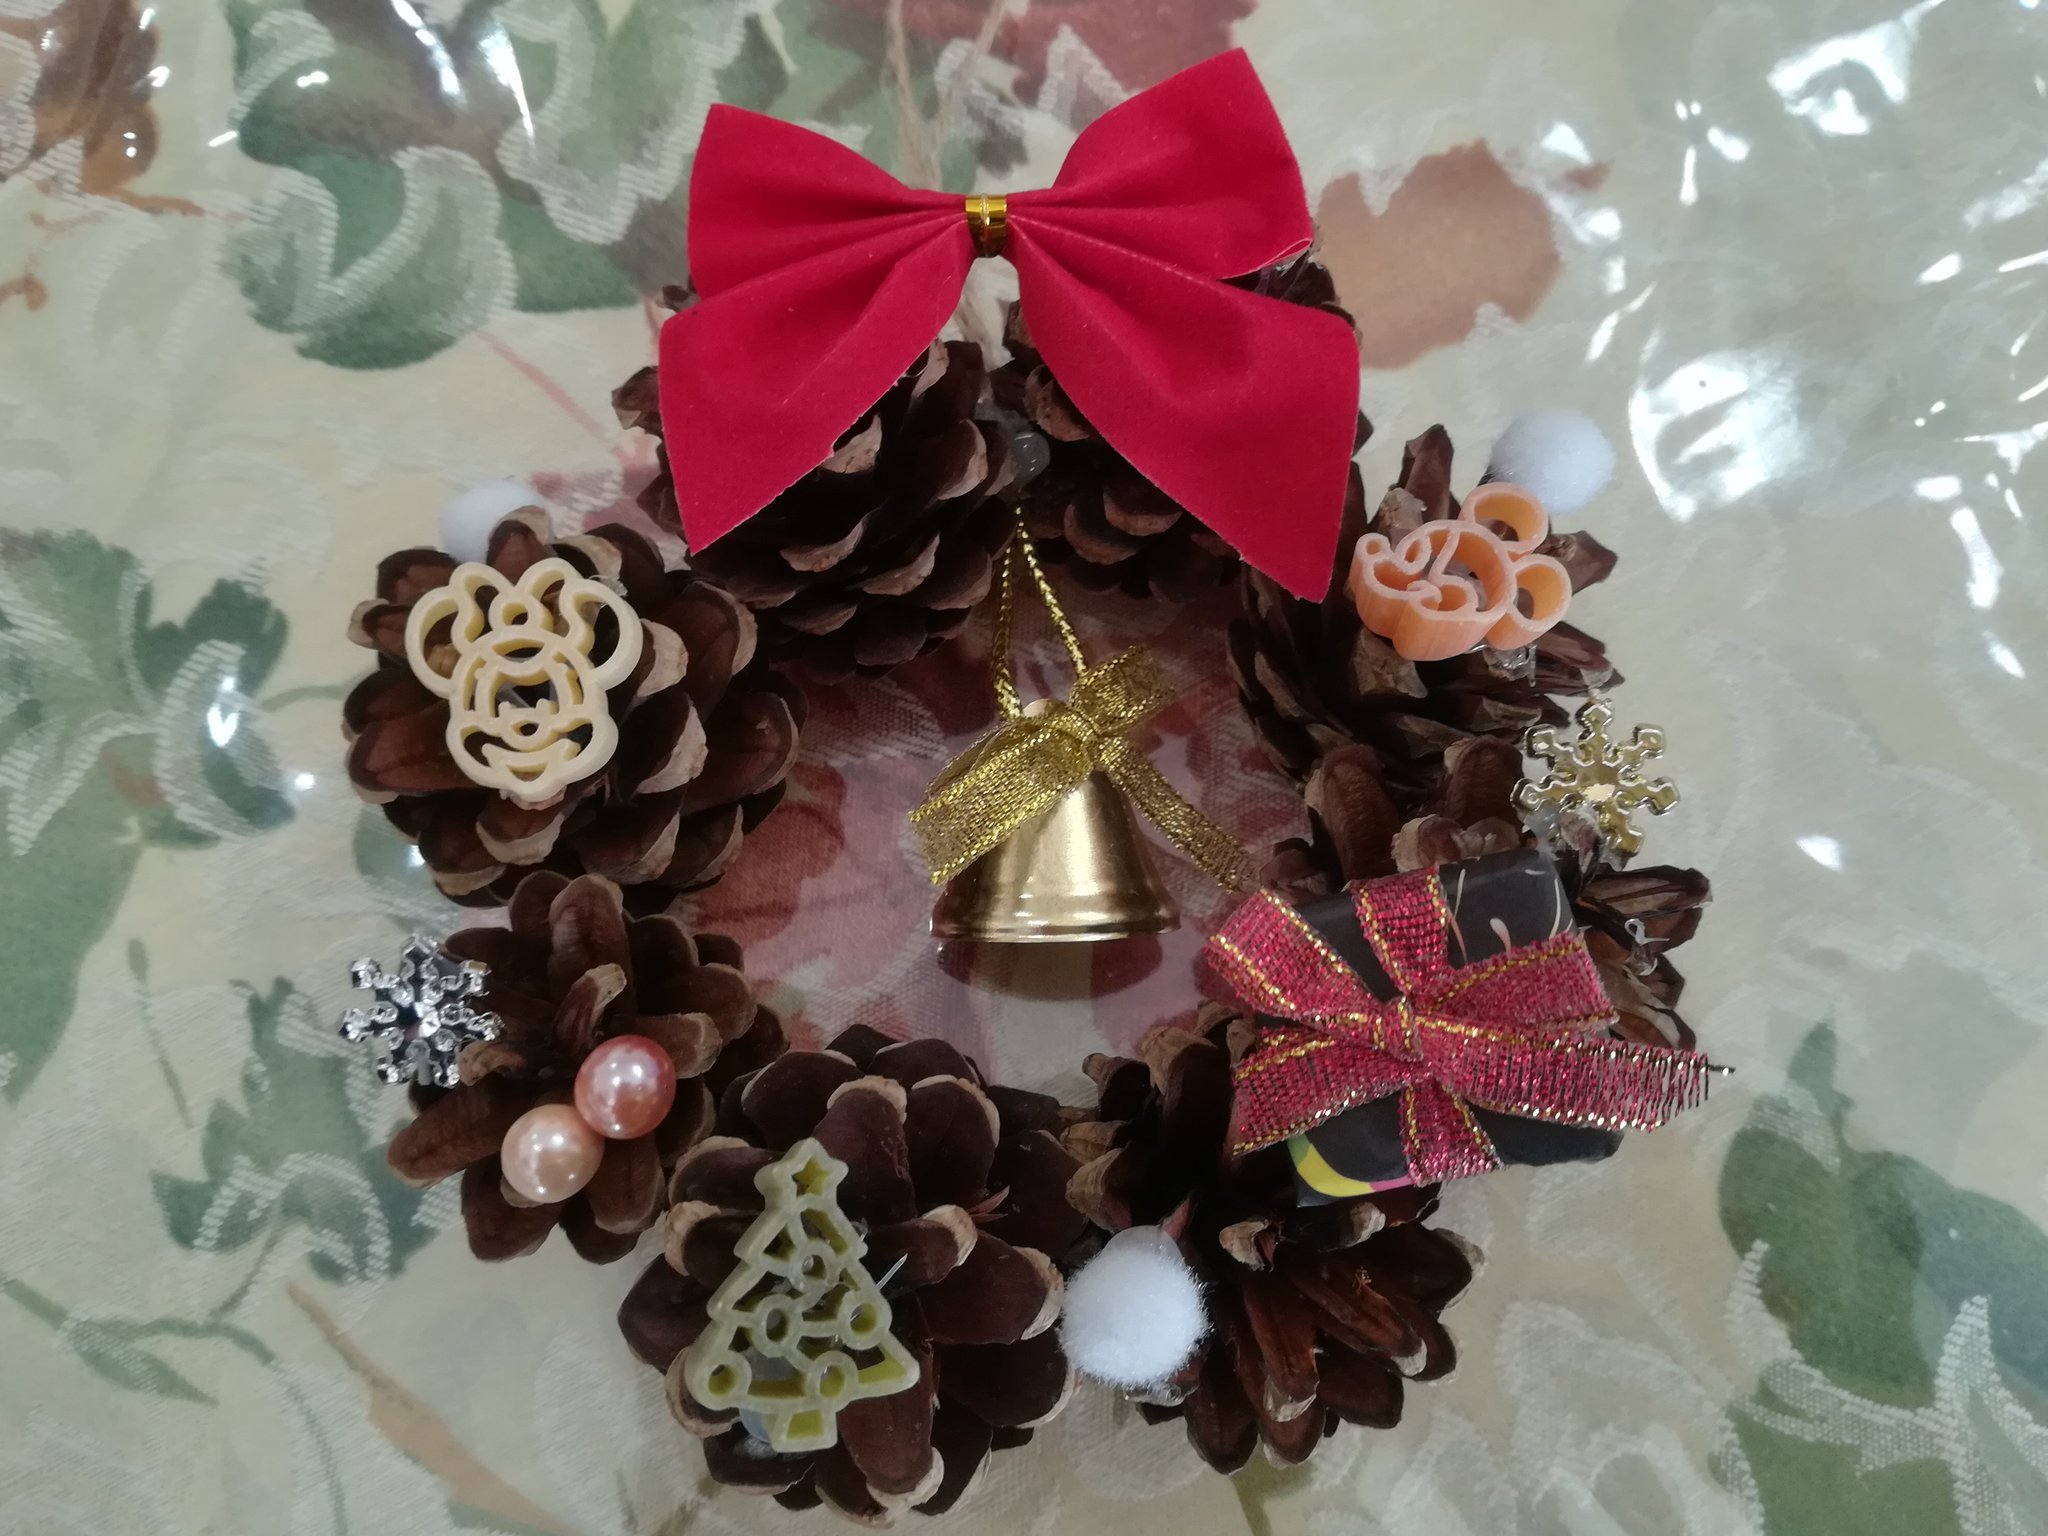 リラッママ 今年の学童保育のクリスマス工作は リースを作りました 私も作りました 100円均一の松ぼっくりリースに飾り付けをしました ディズニーのマカロニがかわいい T Co Njmyecsvqa Twitter